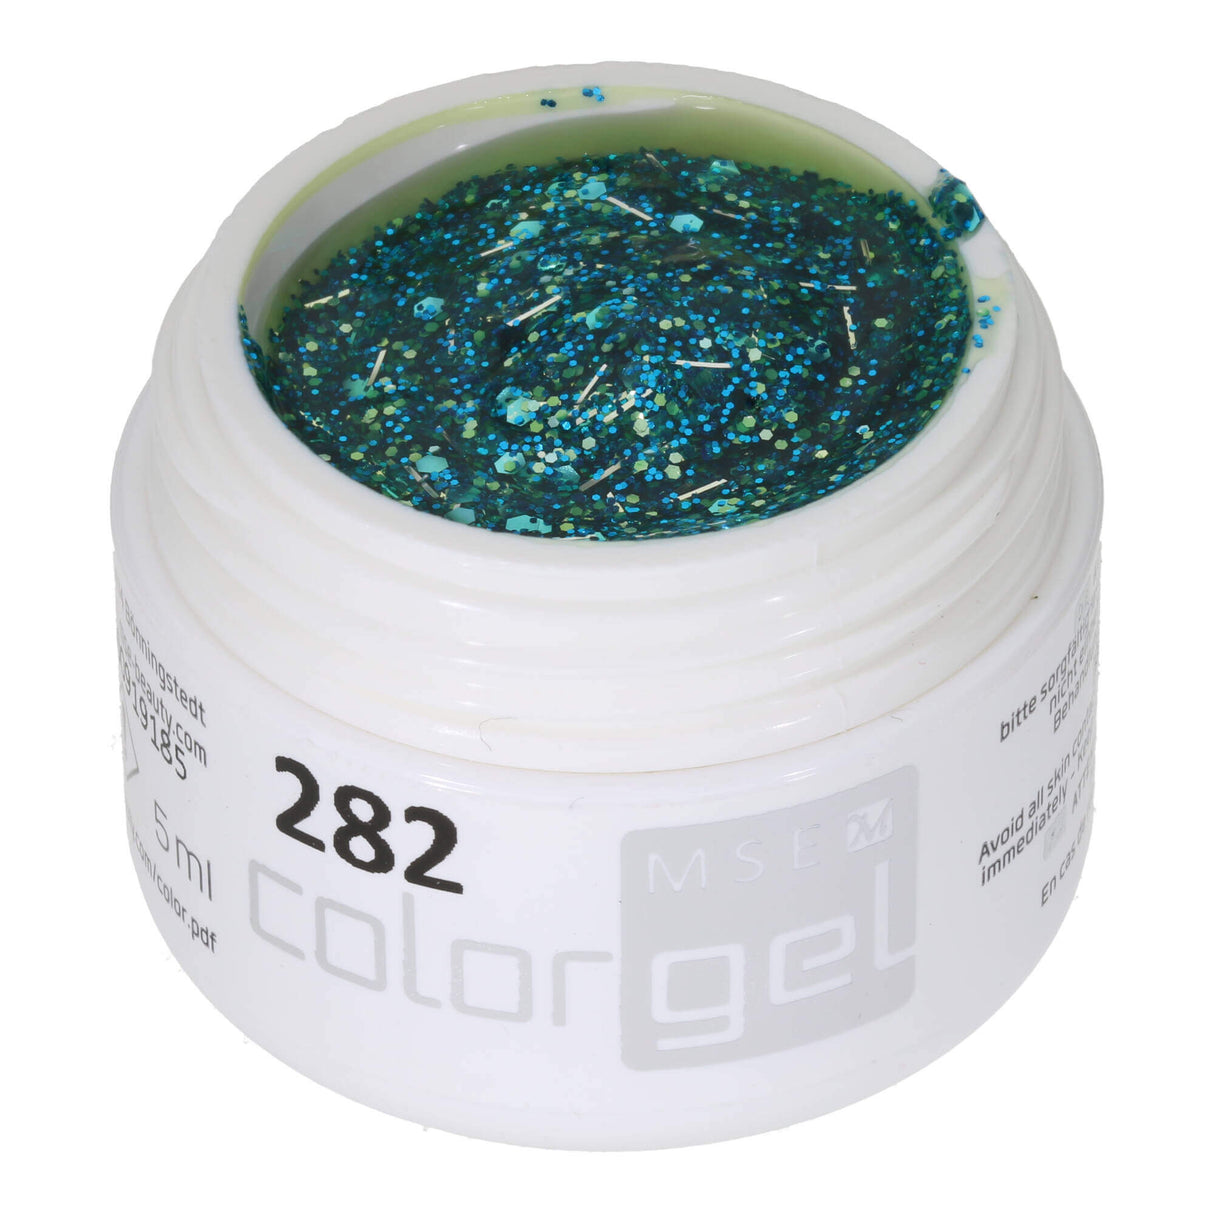 #282 Premium GLITTER Color Gel 5ml Gel trong suốt với các sợi lấp lánh màu xanh lam mịn, xanh lá cây tháng năm thô và các sợi lấp lánh bạc